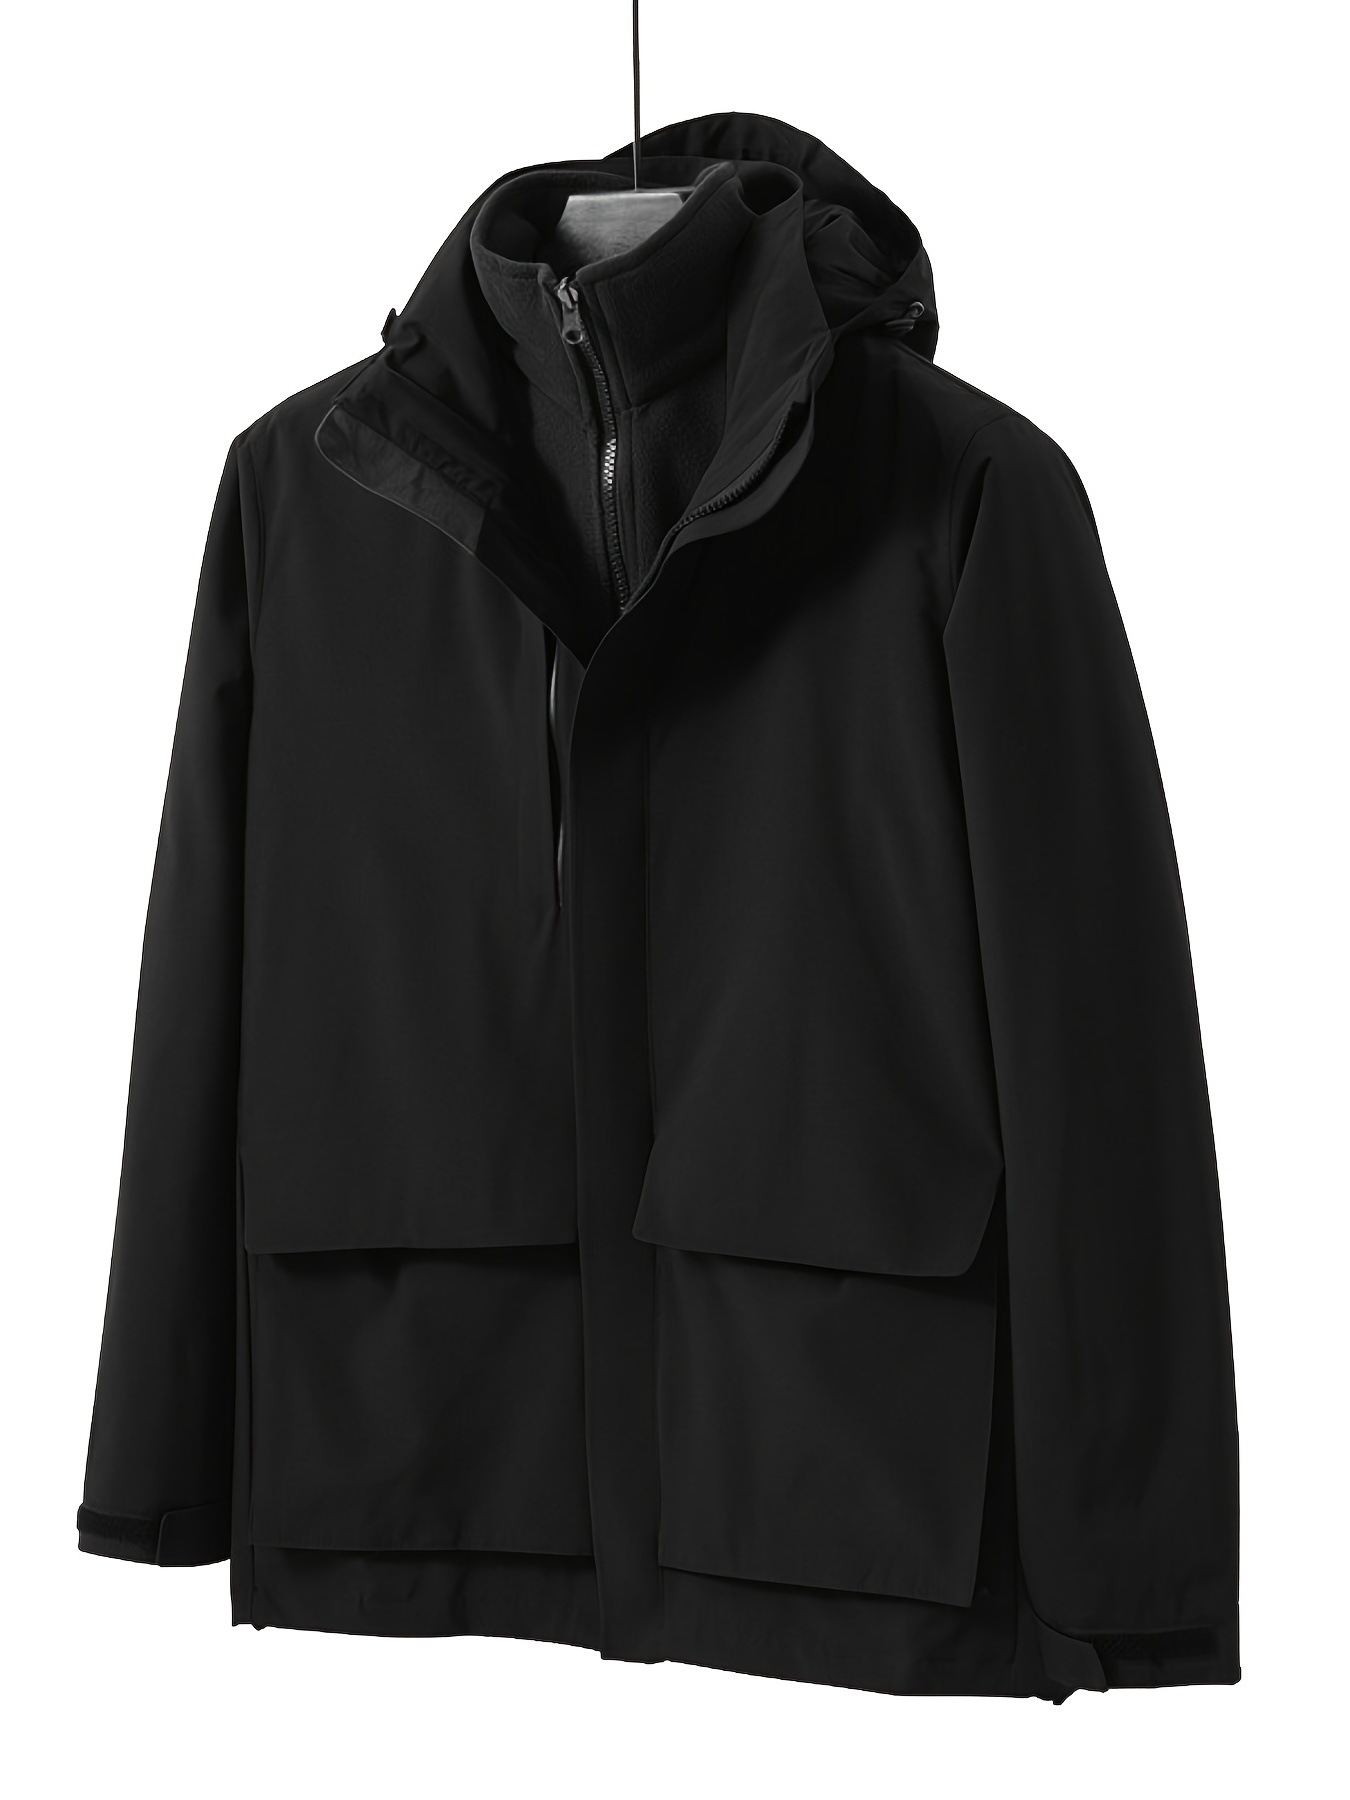 Mens Outdoor Jacket Waterproof Windproof Rain Coat For Winter Cold